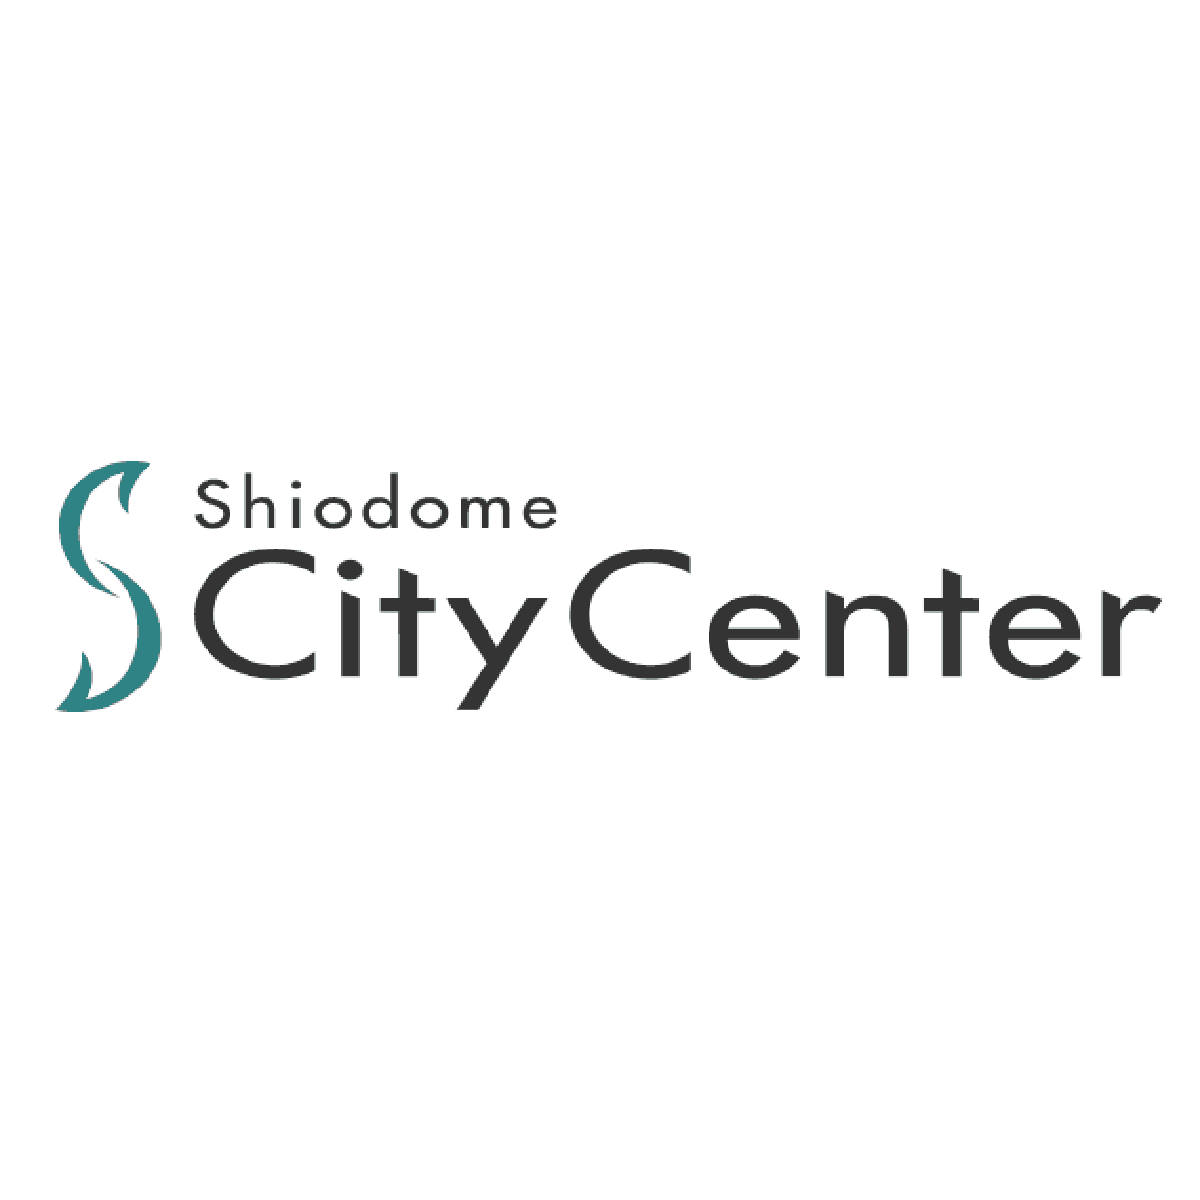 汐留シティセンターの公式ウェブサイトおよび公式SNSについてのお知らせ